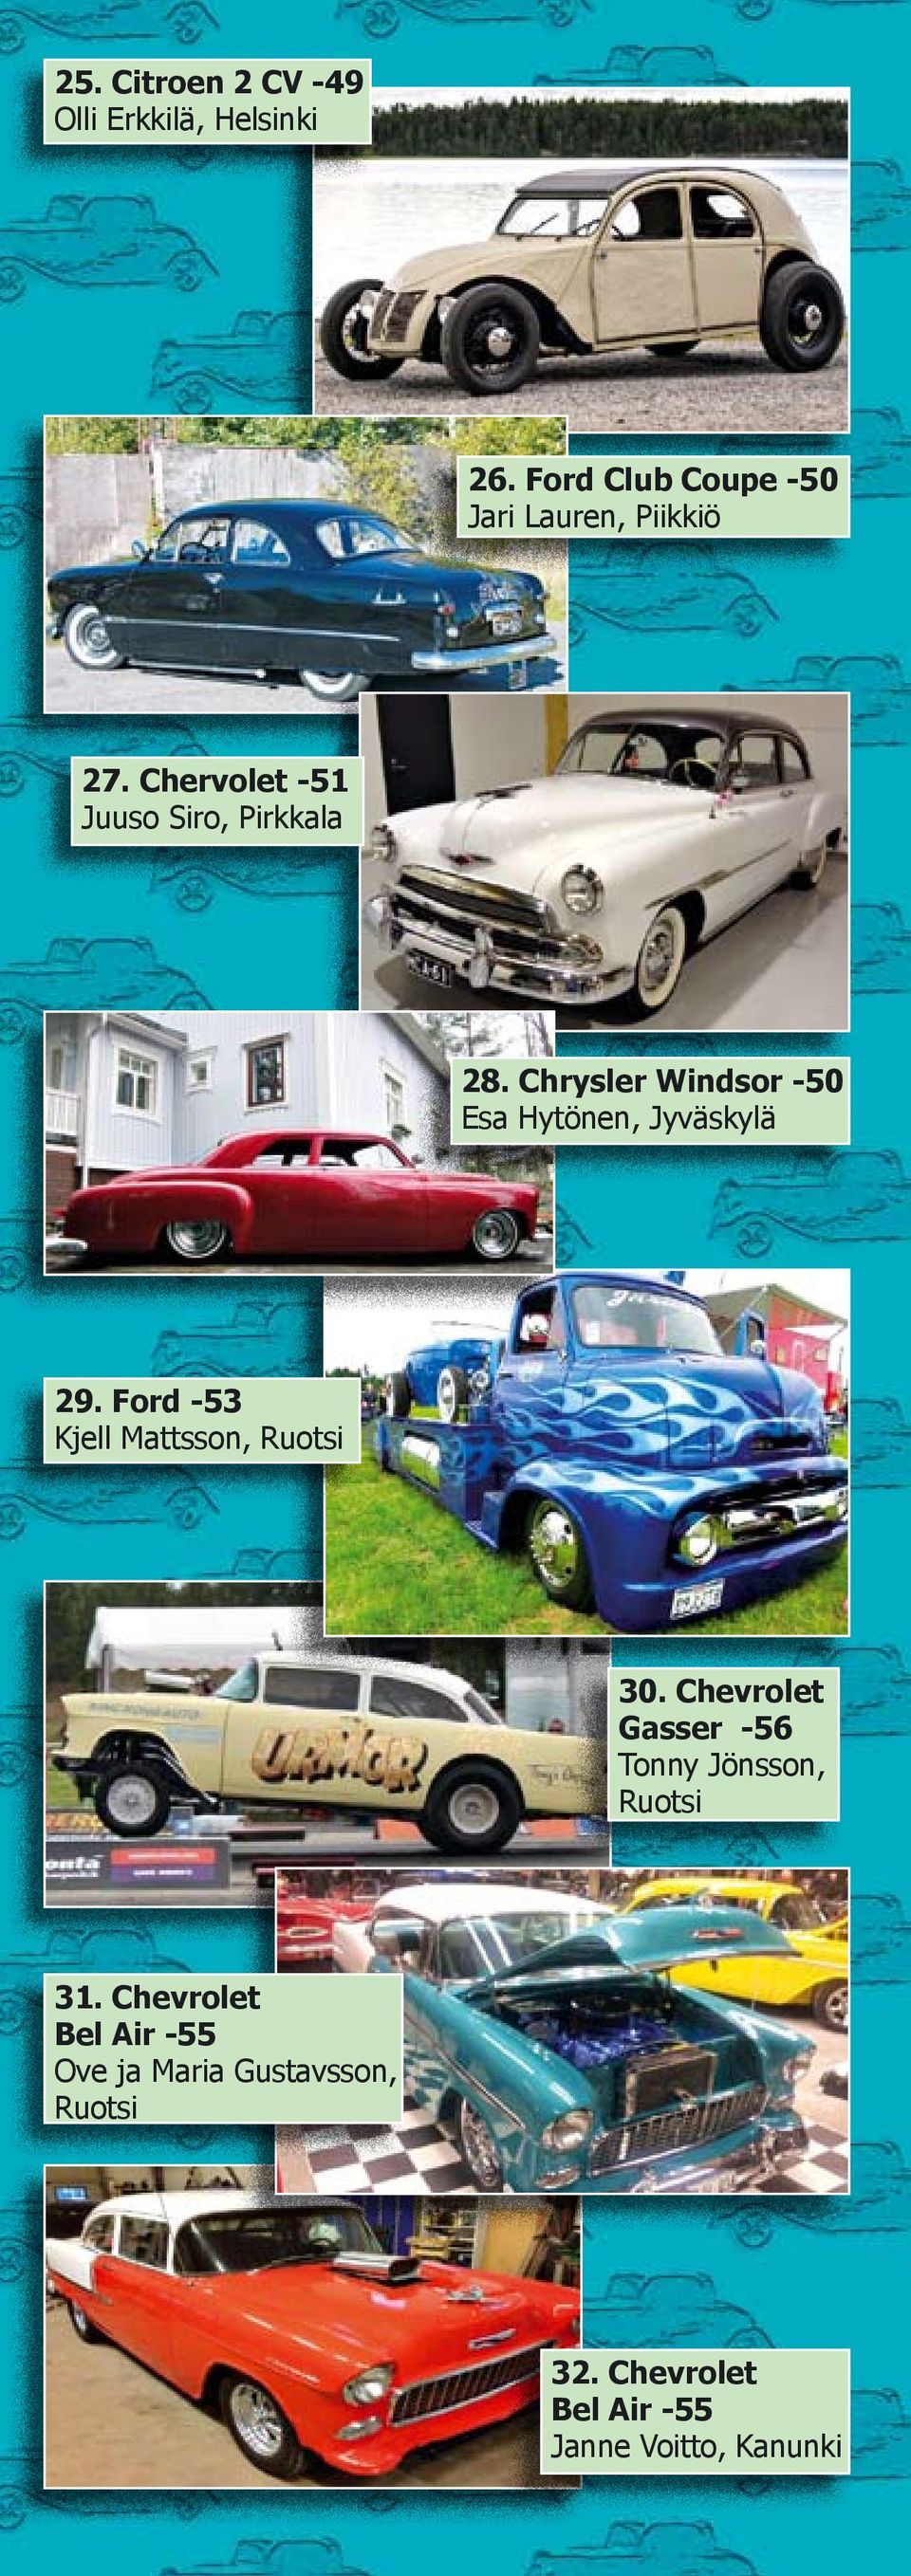 Chrysler Windsor -50 Esa Hytönen, Jyväskylä 29. Ford -53 Kjell Mattsson, Ruotsi 30.